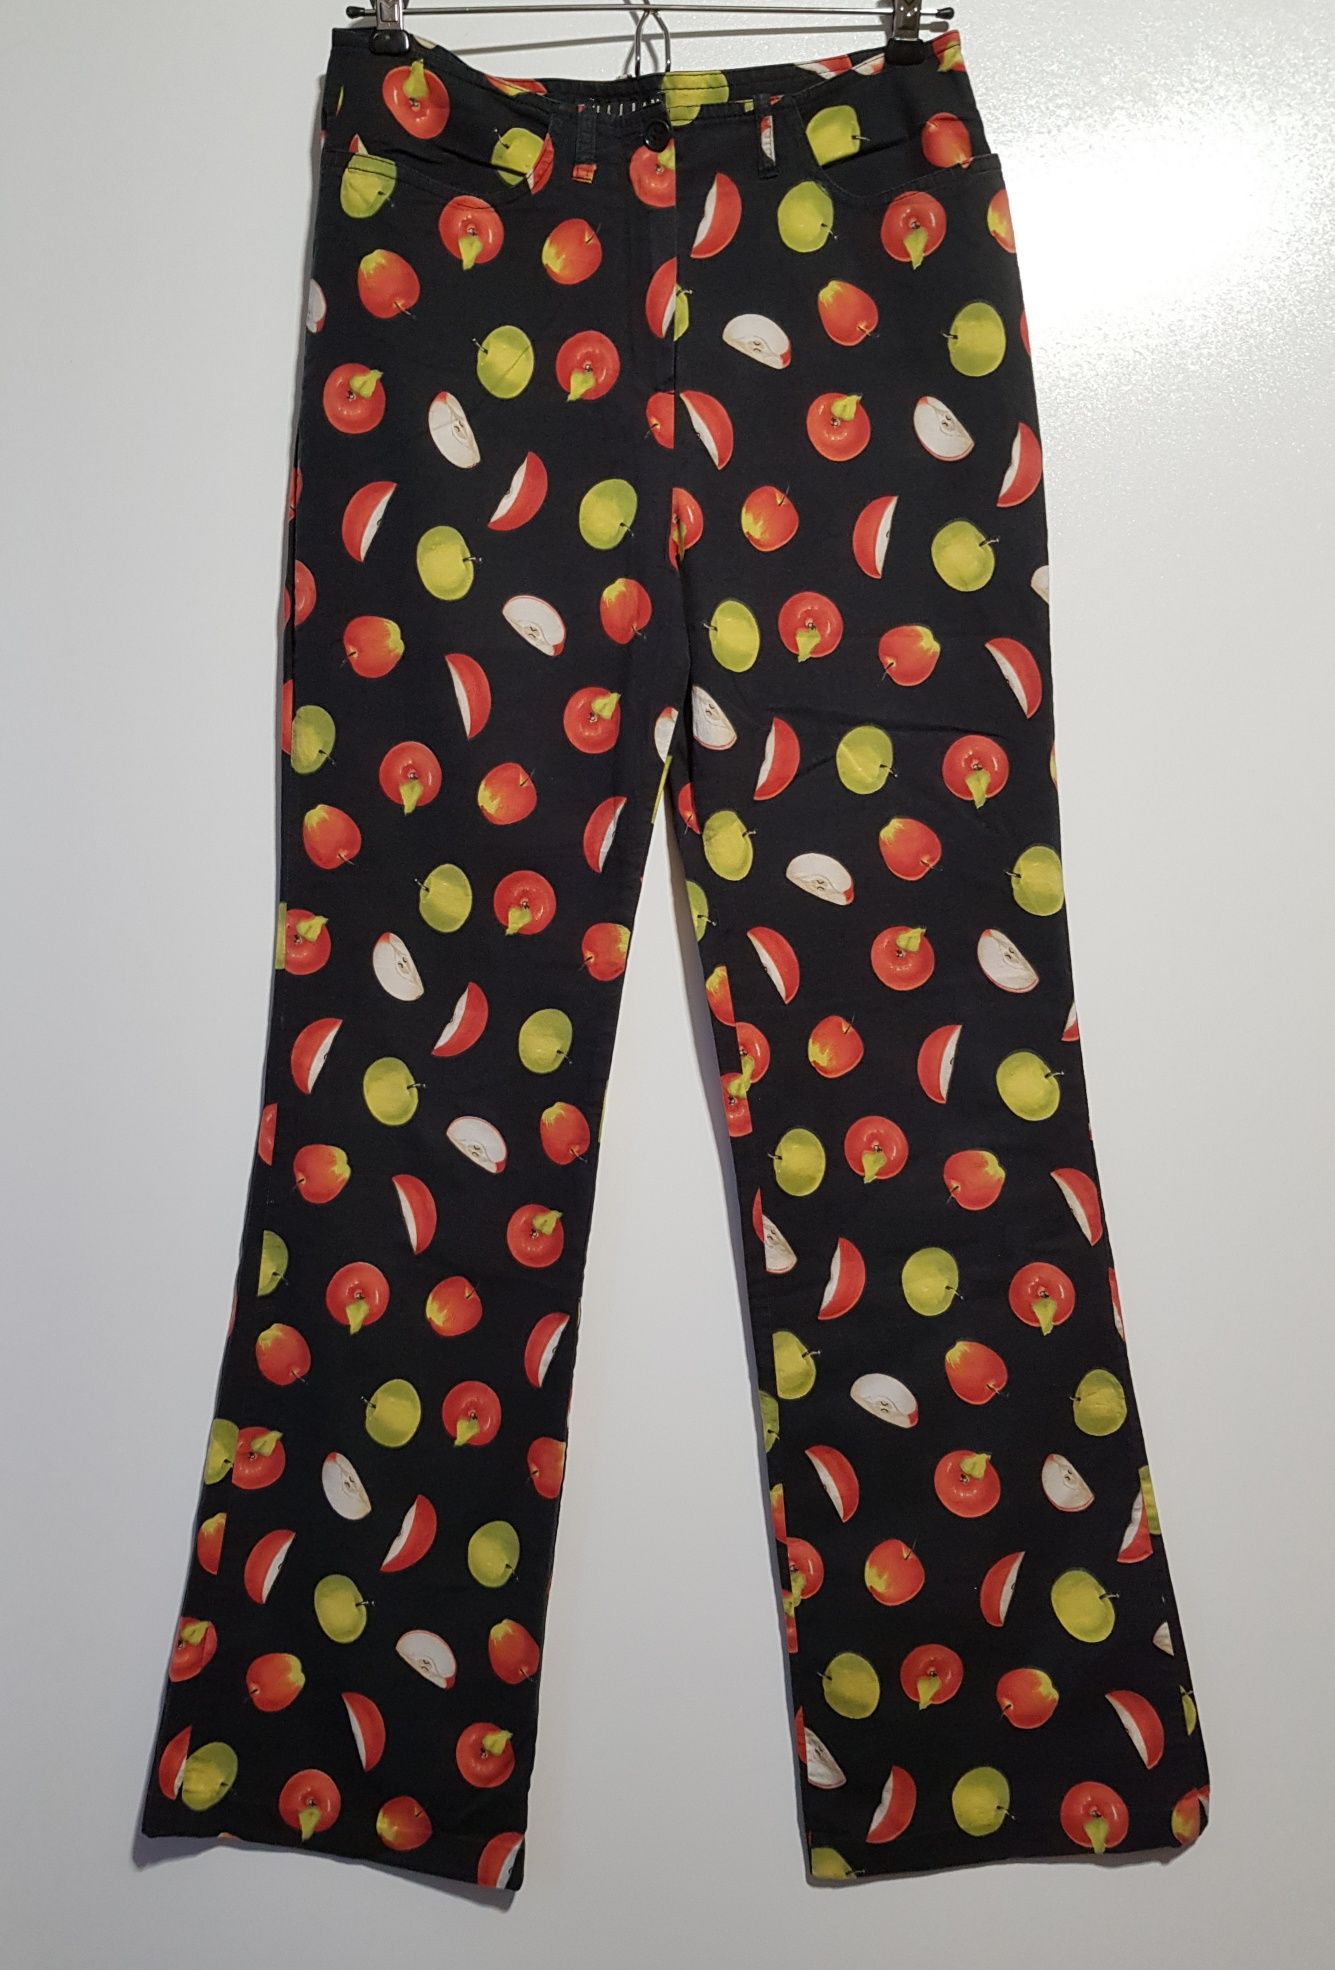 Unikatowe spodnie XS w jabłka kolorowe bawełniane szerokie nogawki